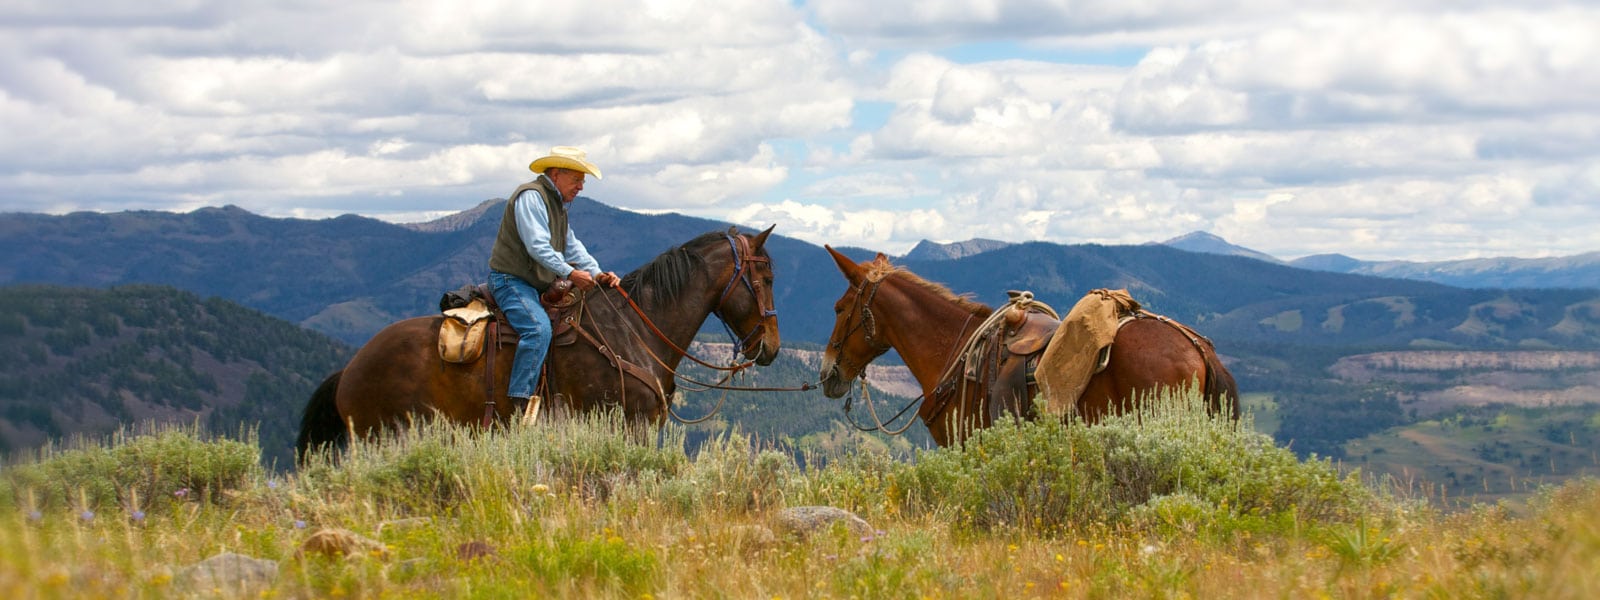 man on horseback in Montana